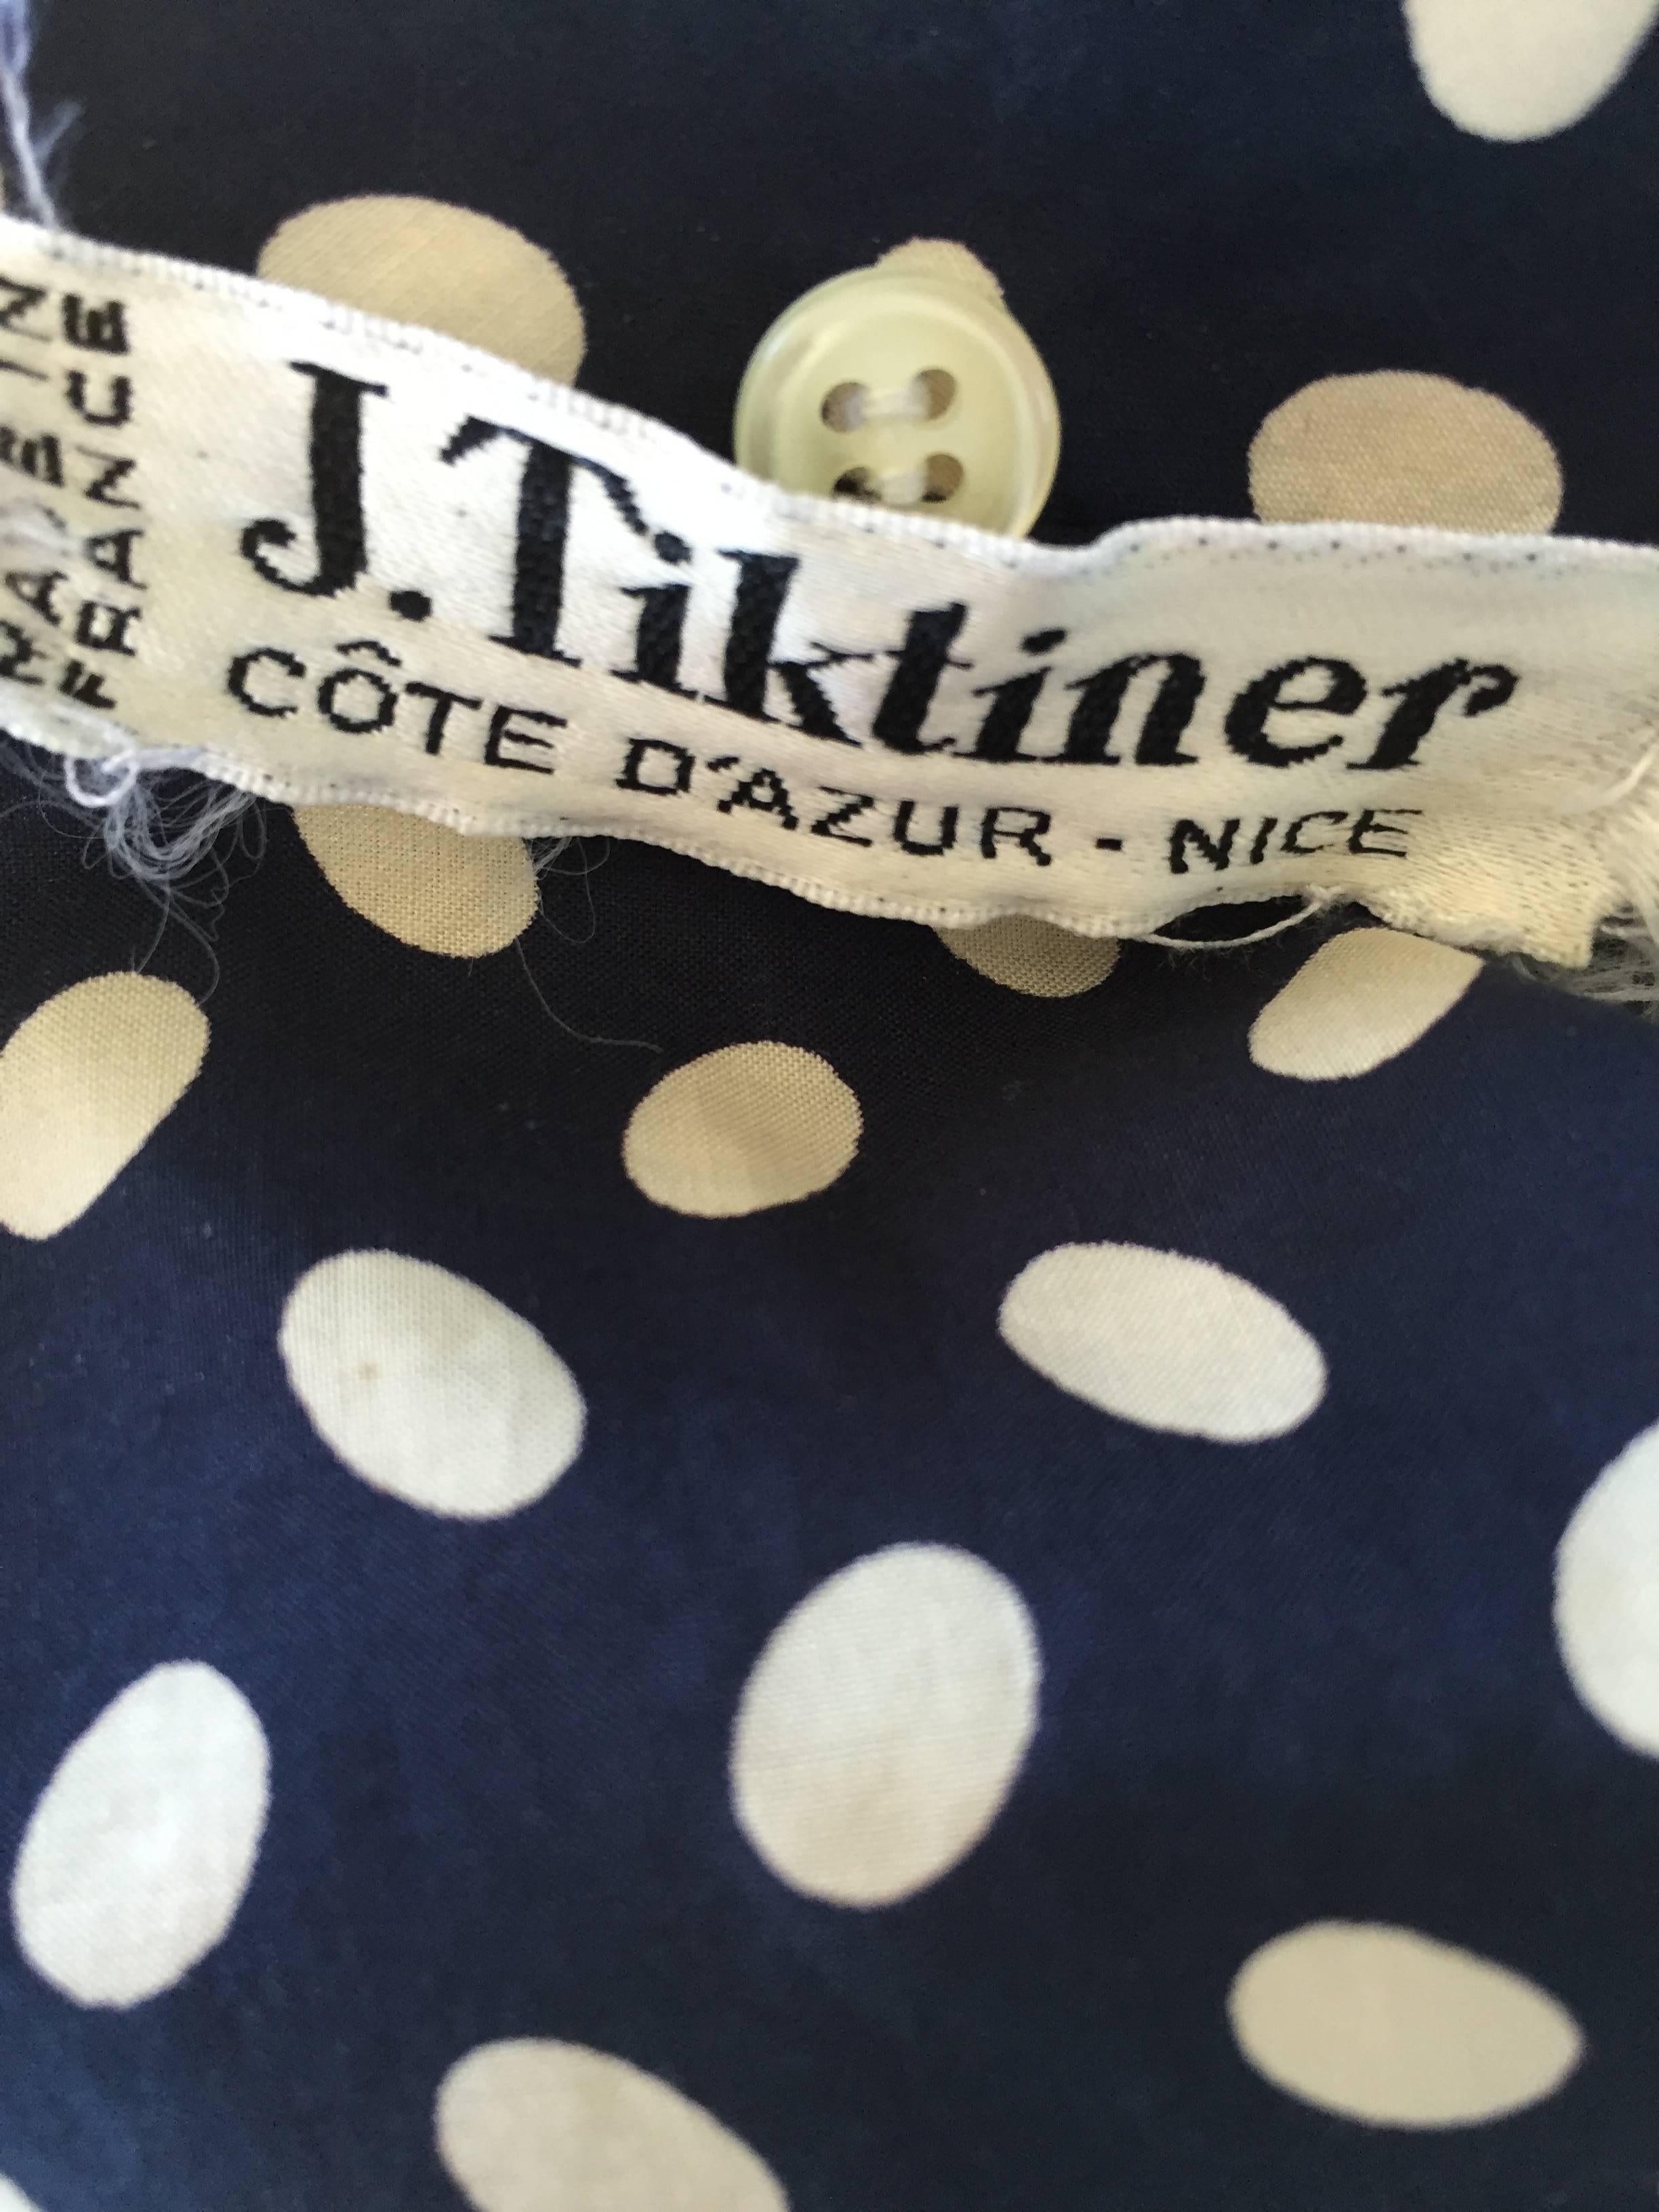 Vintage J. Tiktiner Cote D'Azur - Nice Navy Blue + White Polka Dot Belted Dress 2